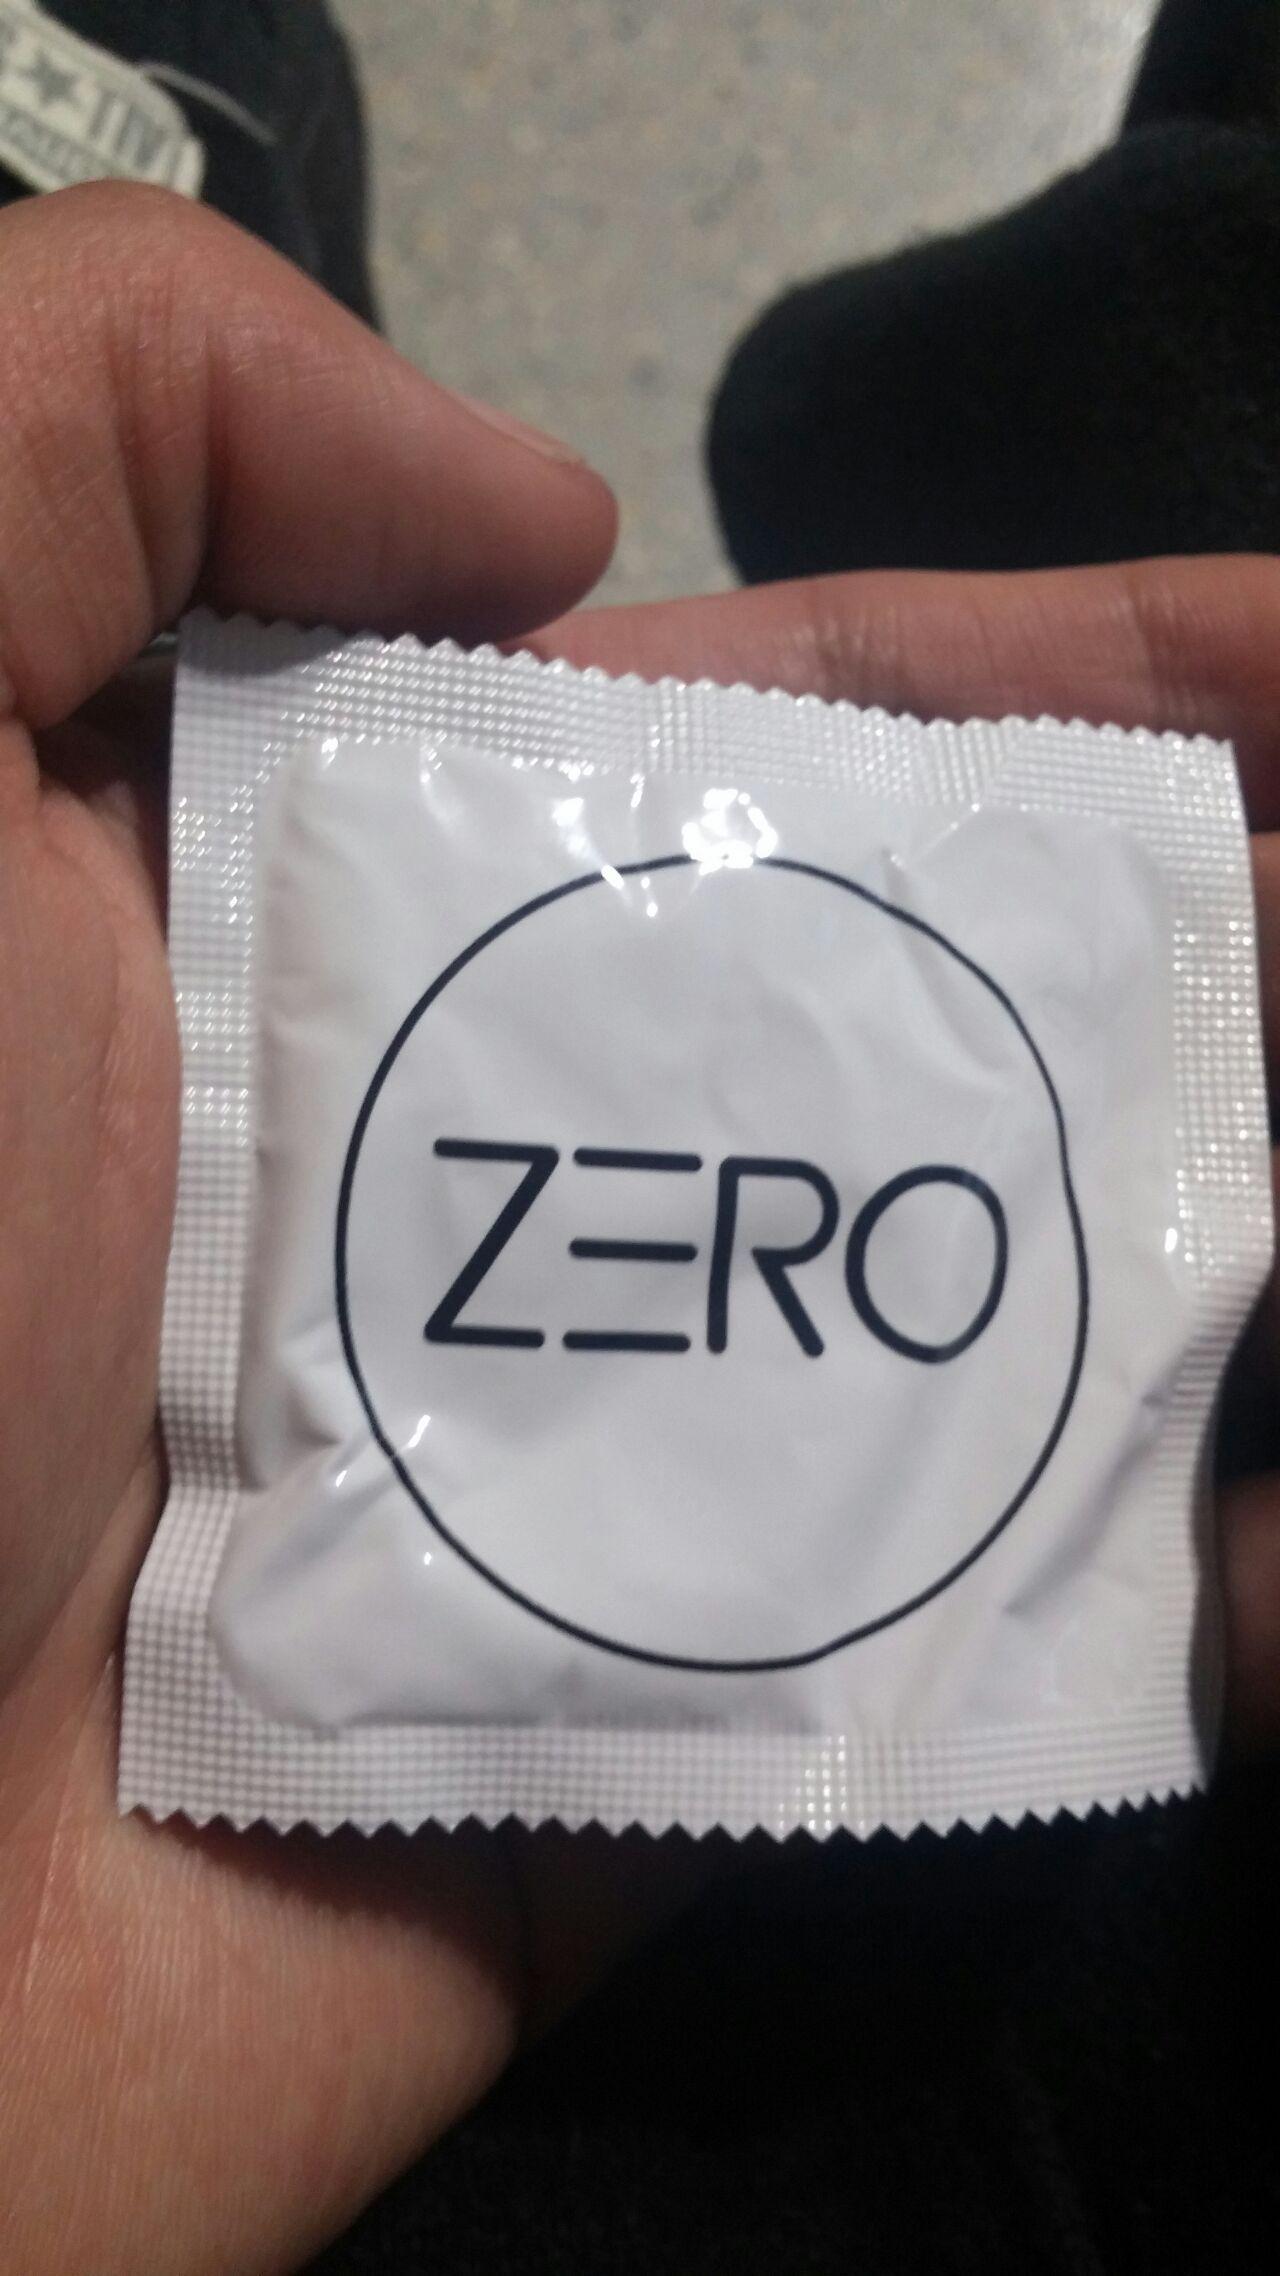 安检能查出避孕套吗?